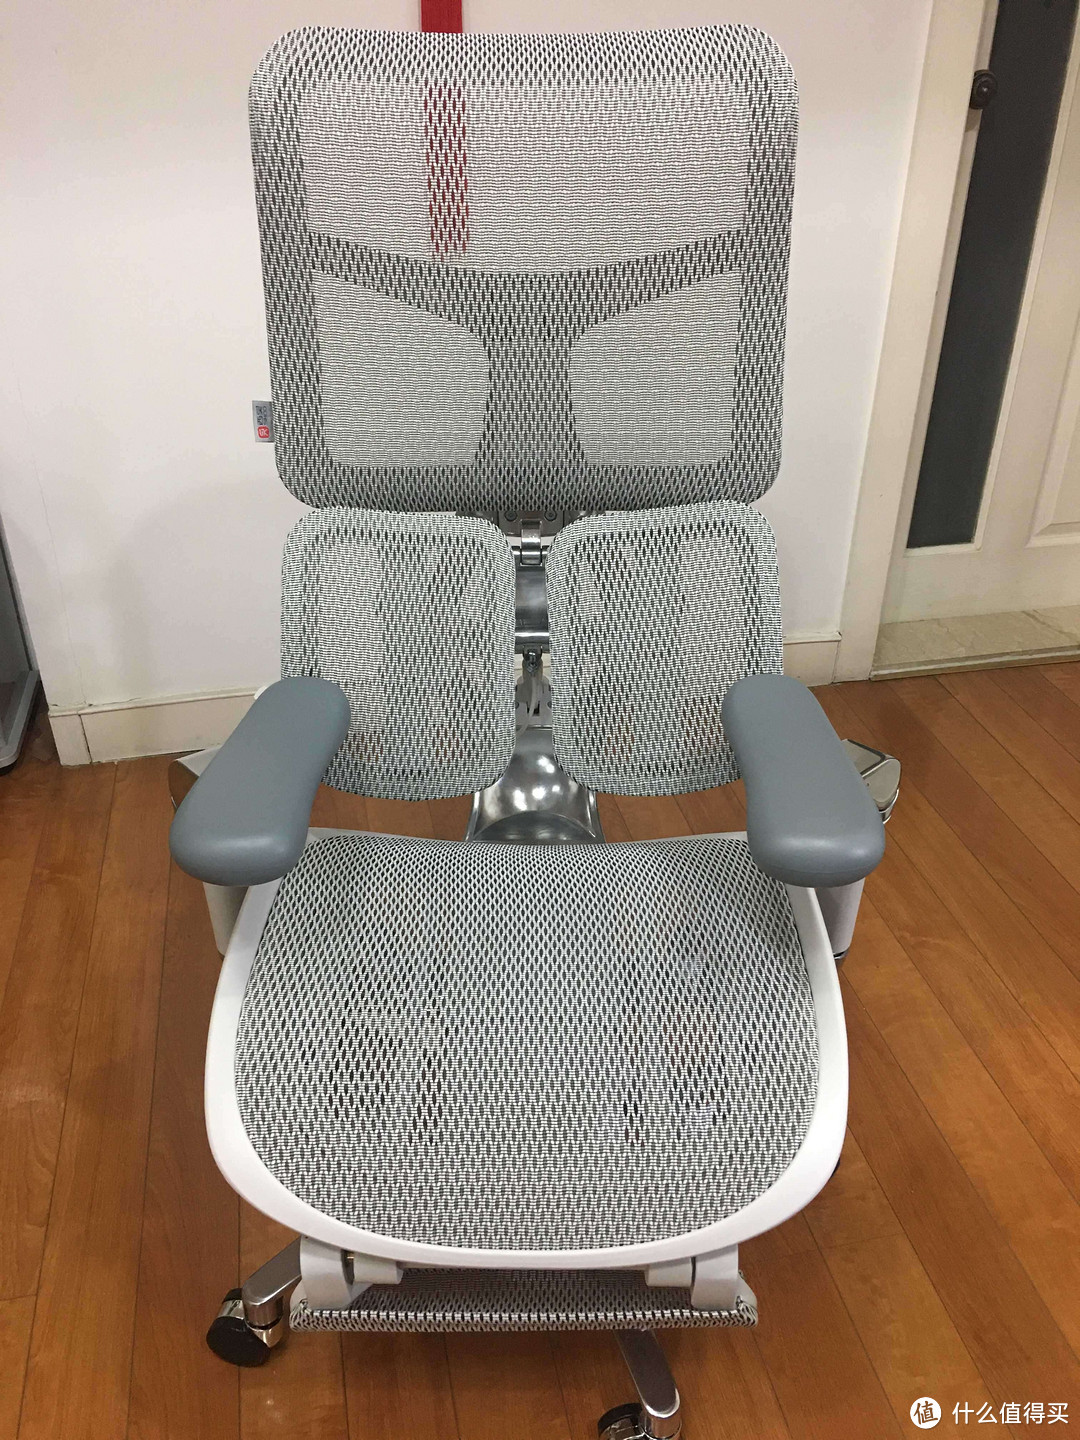 西昊人体工学椅作为一款符合人体工程学原理的办公椅，对身体健康有着积极的影响